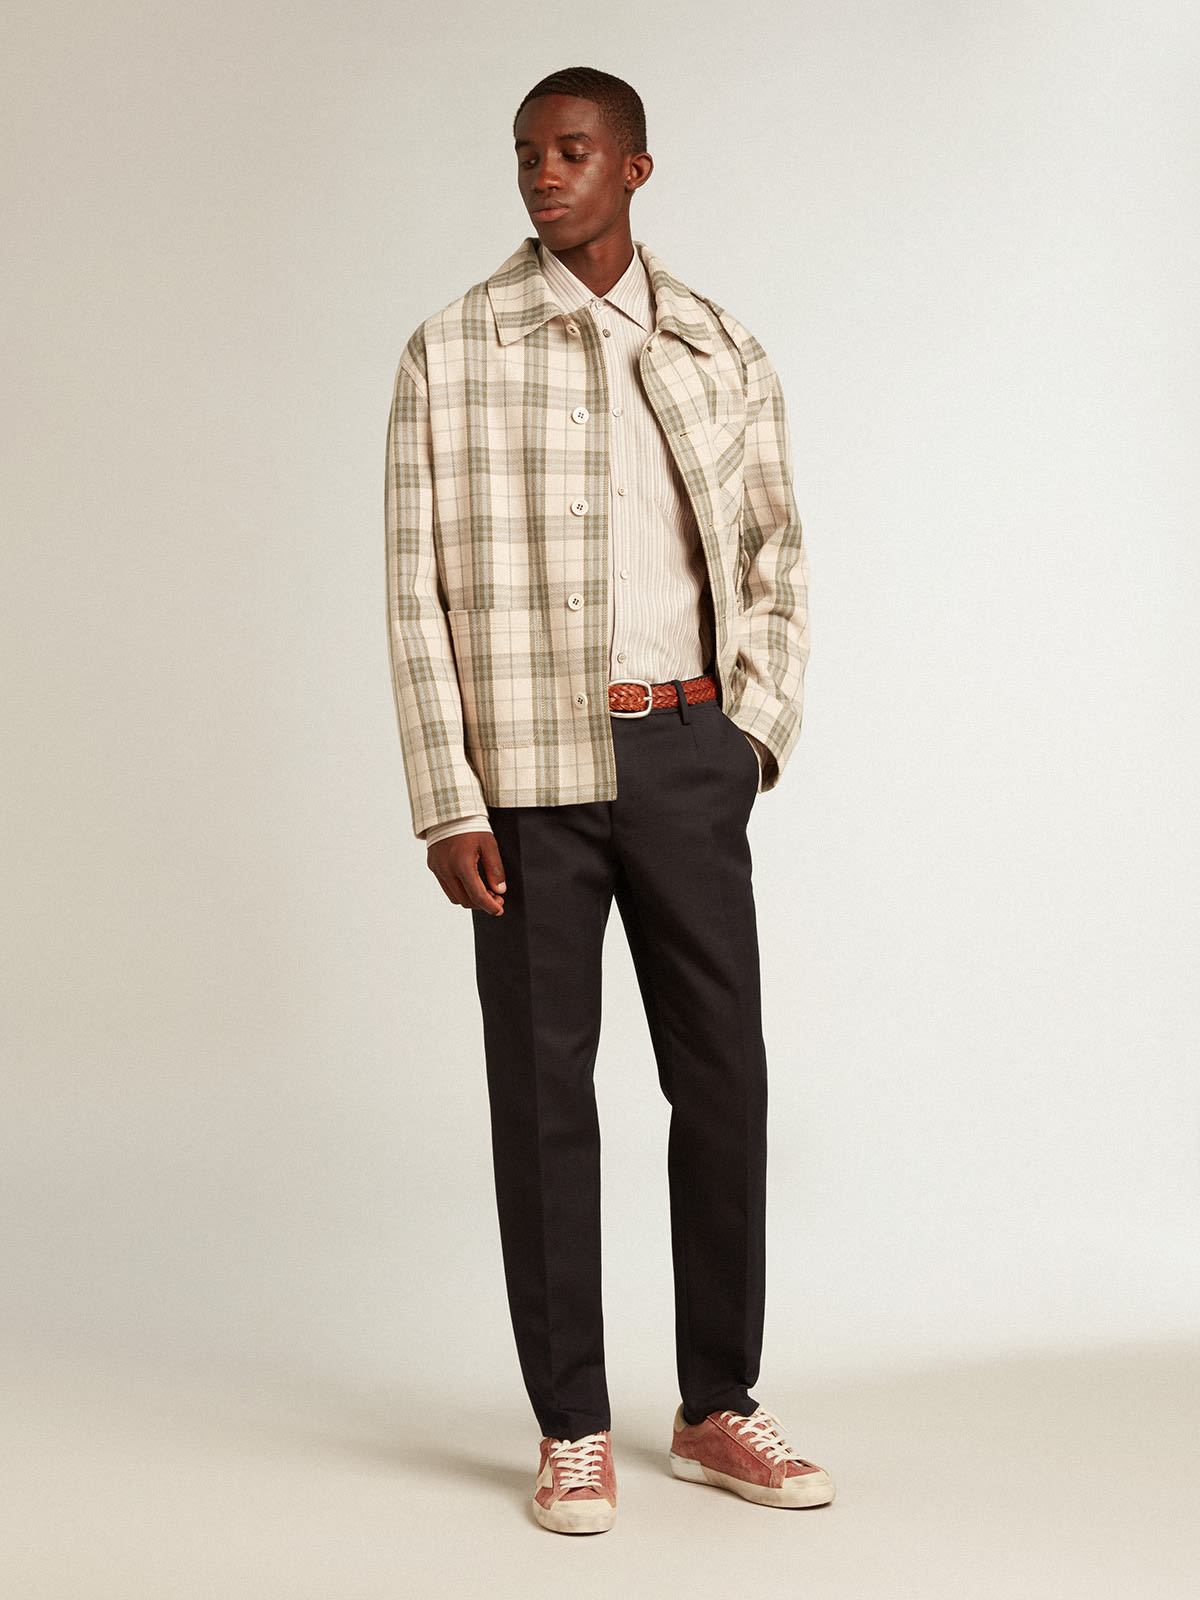 Men's viscose-blend linen shirt with striped pattern | Golden Goose